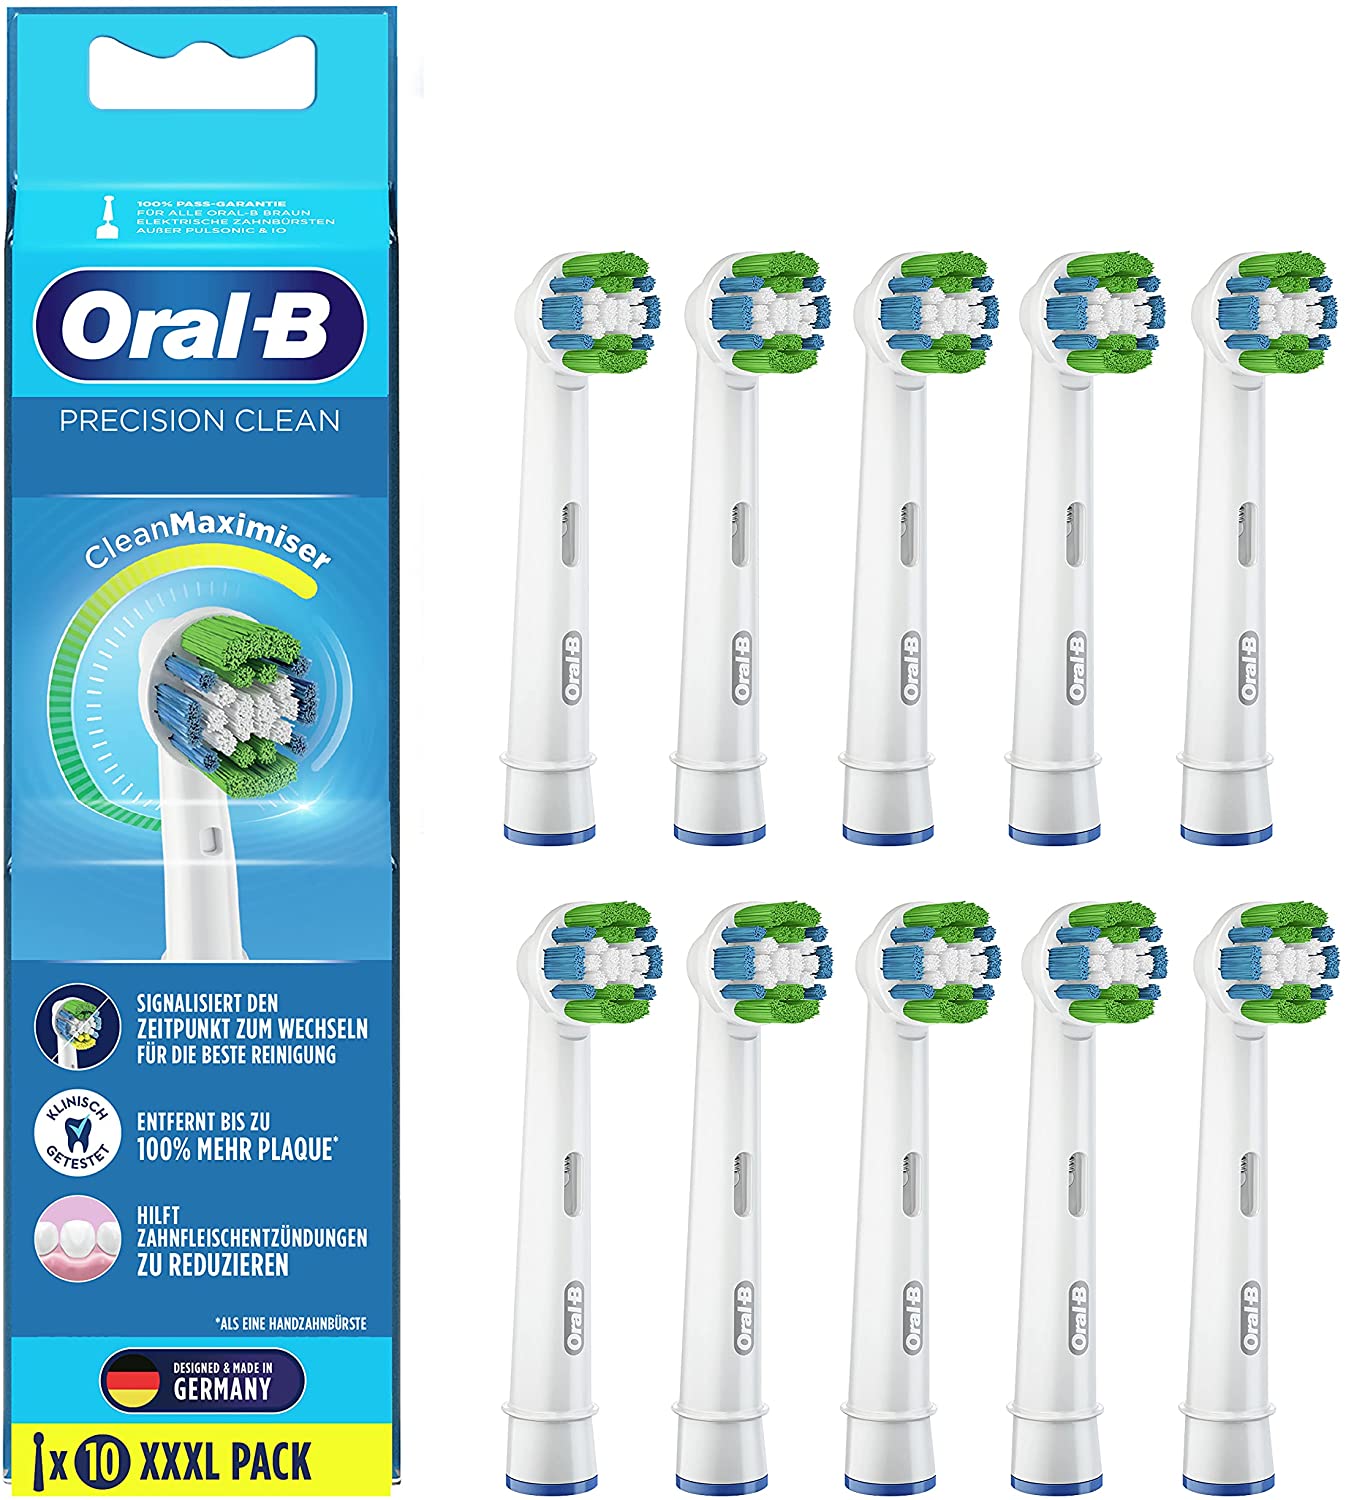 8x Oral-B Precision Clean Aufsteckbürsten für 15,99€ (statt 26€)